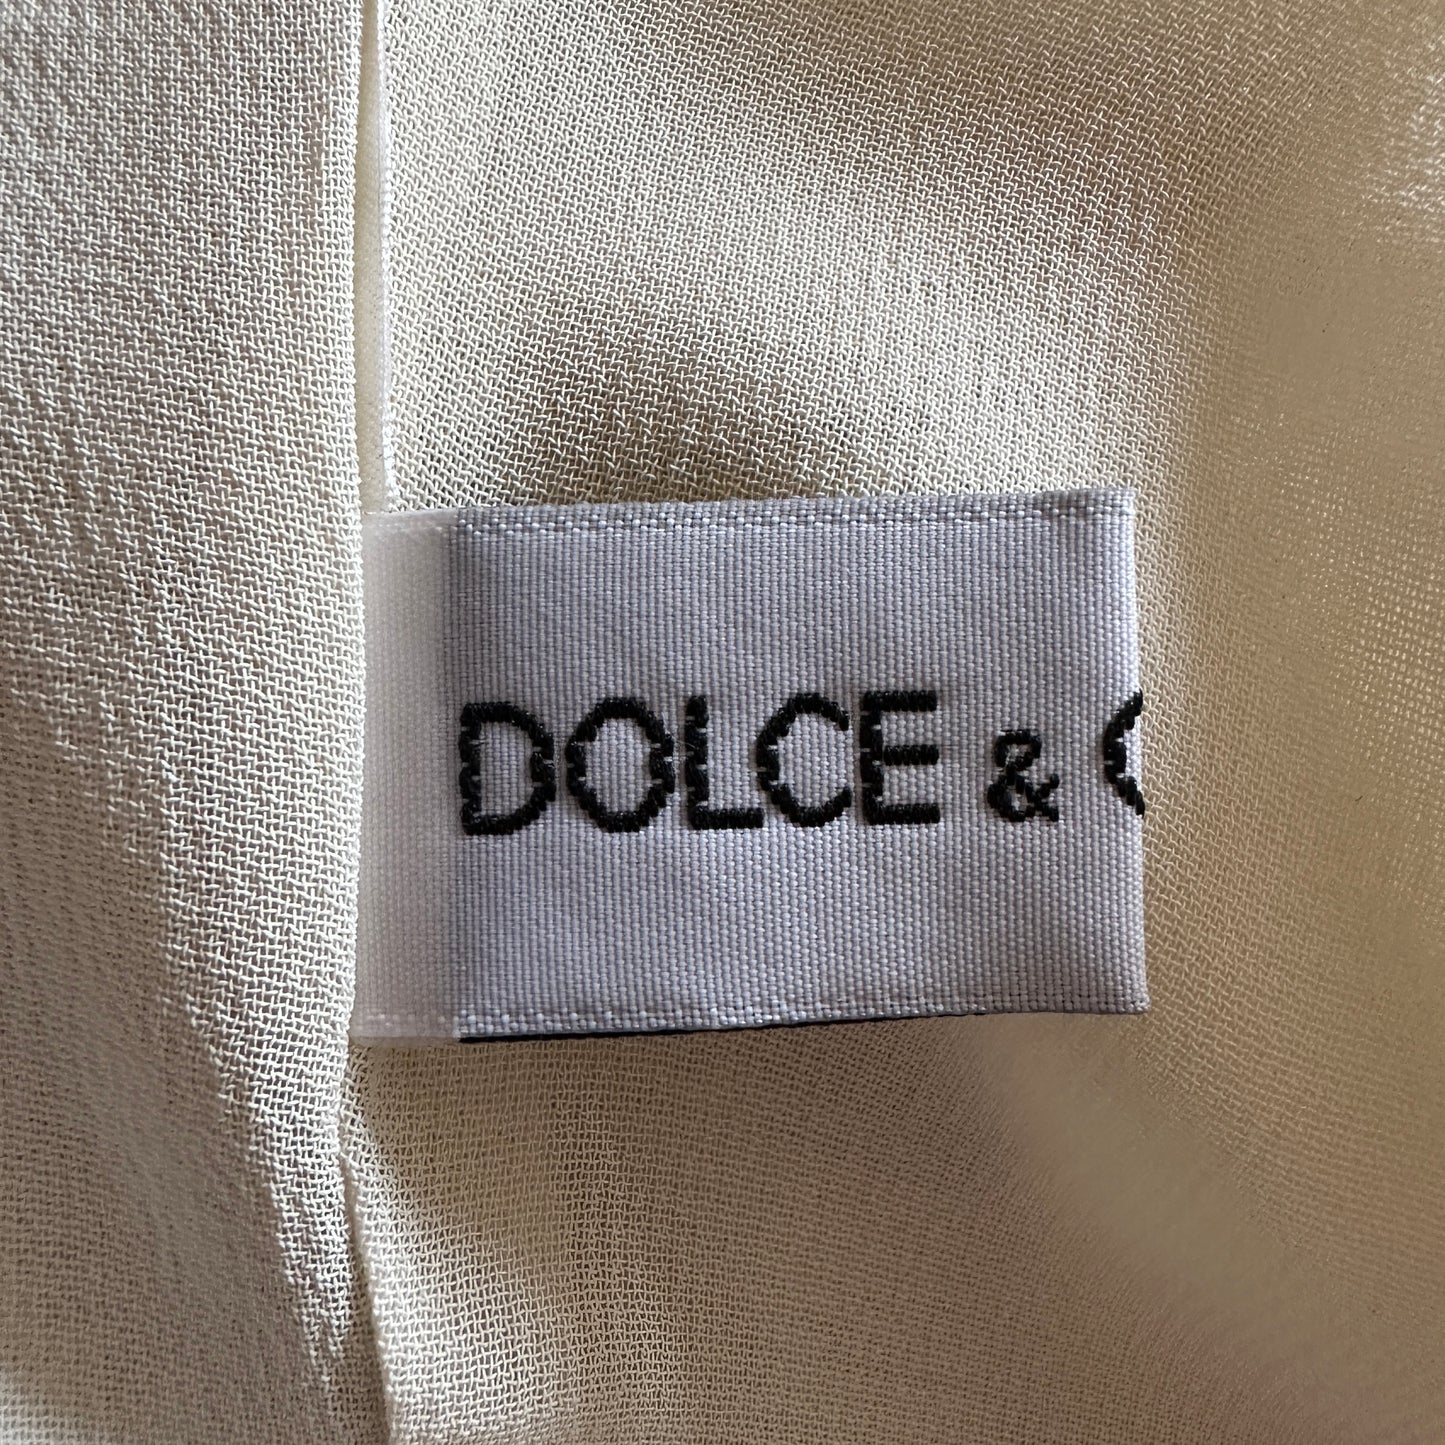 Dolce & Gabbana Fall 1995 Chiffon Tie Up Dress Jacket